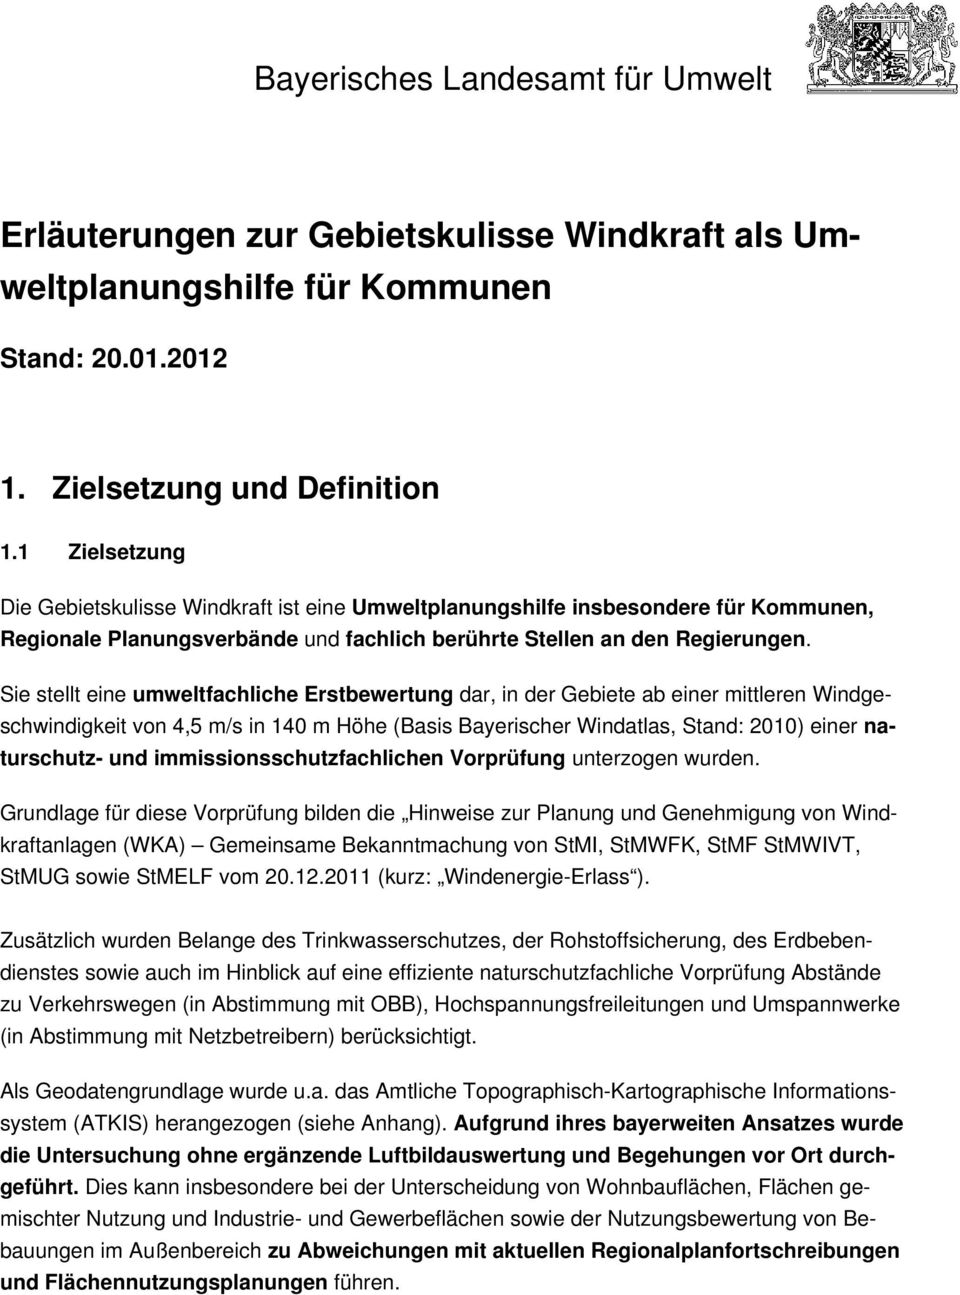 Sie stellt eine umweltfachliche Erstbewertung dar, in der Gebiete ab einer mittleren Windgeschwindigkeit von 4,5 m/s in 140 m Höhe (Basis Bayerischer Windatlas, Stand: 2010) einer naturschutz- und